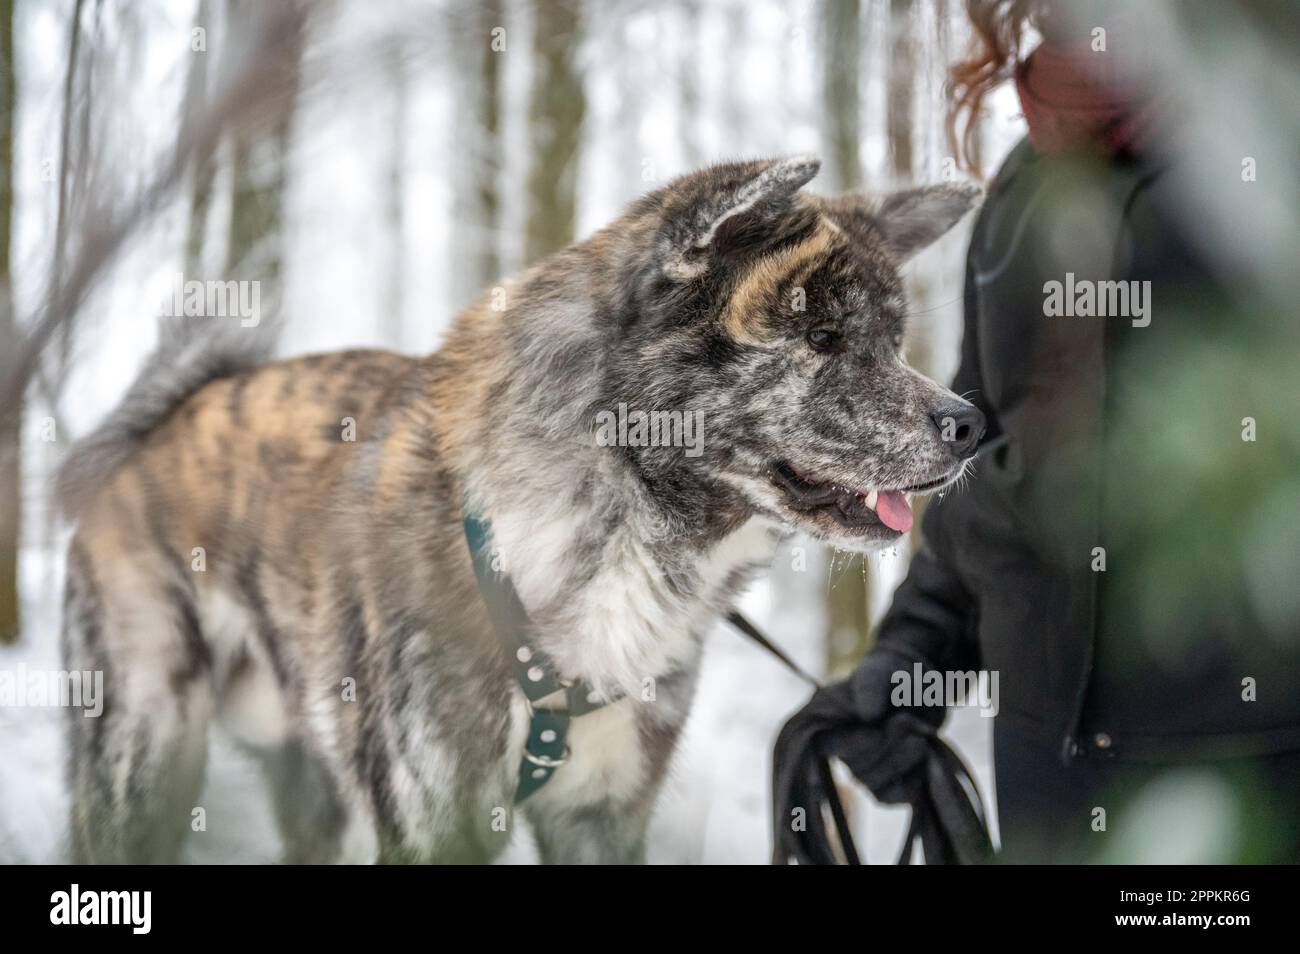 Akita inu perro con piel gris y naranja está de pie junto a su amo femenino con el pelo rizado marrón durante el invierno con el bosque y la nieve en el fondo Foto de stock